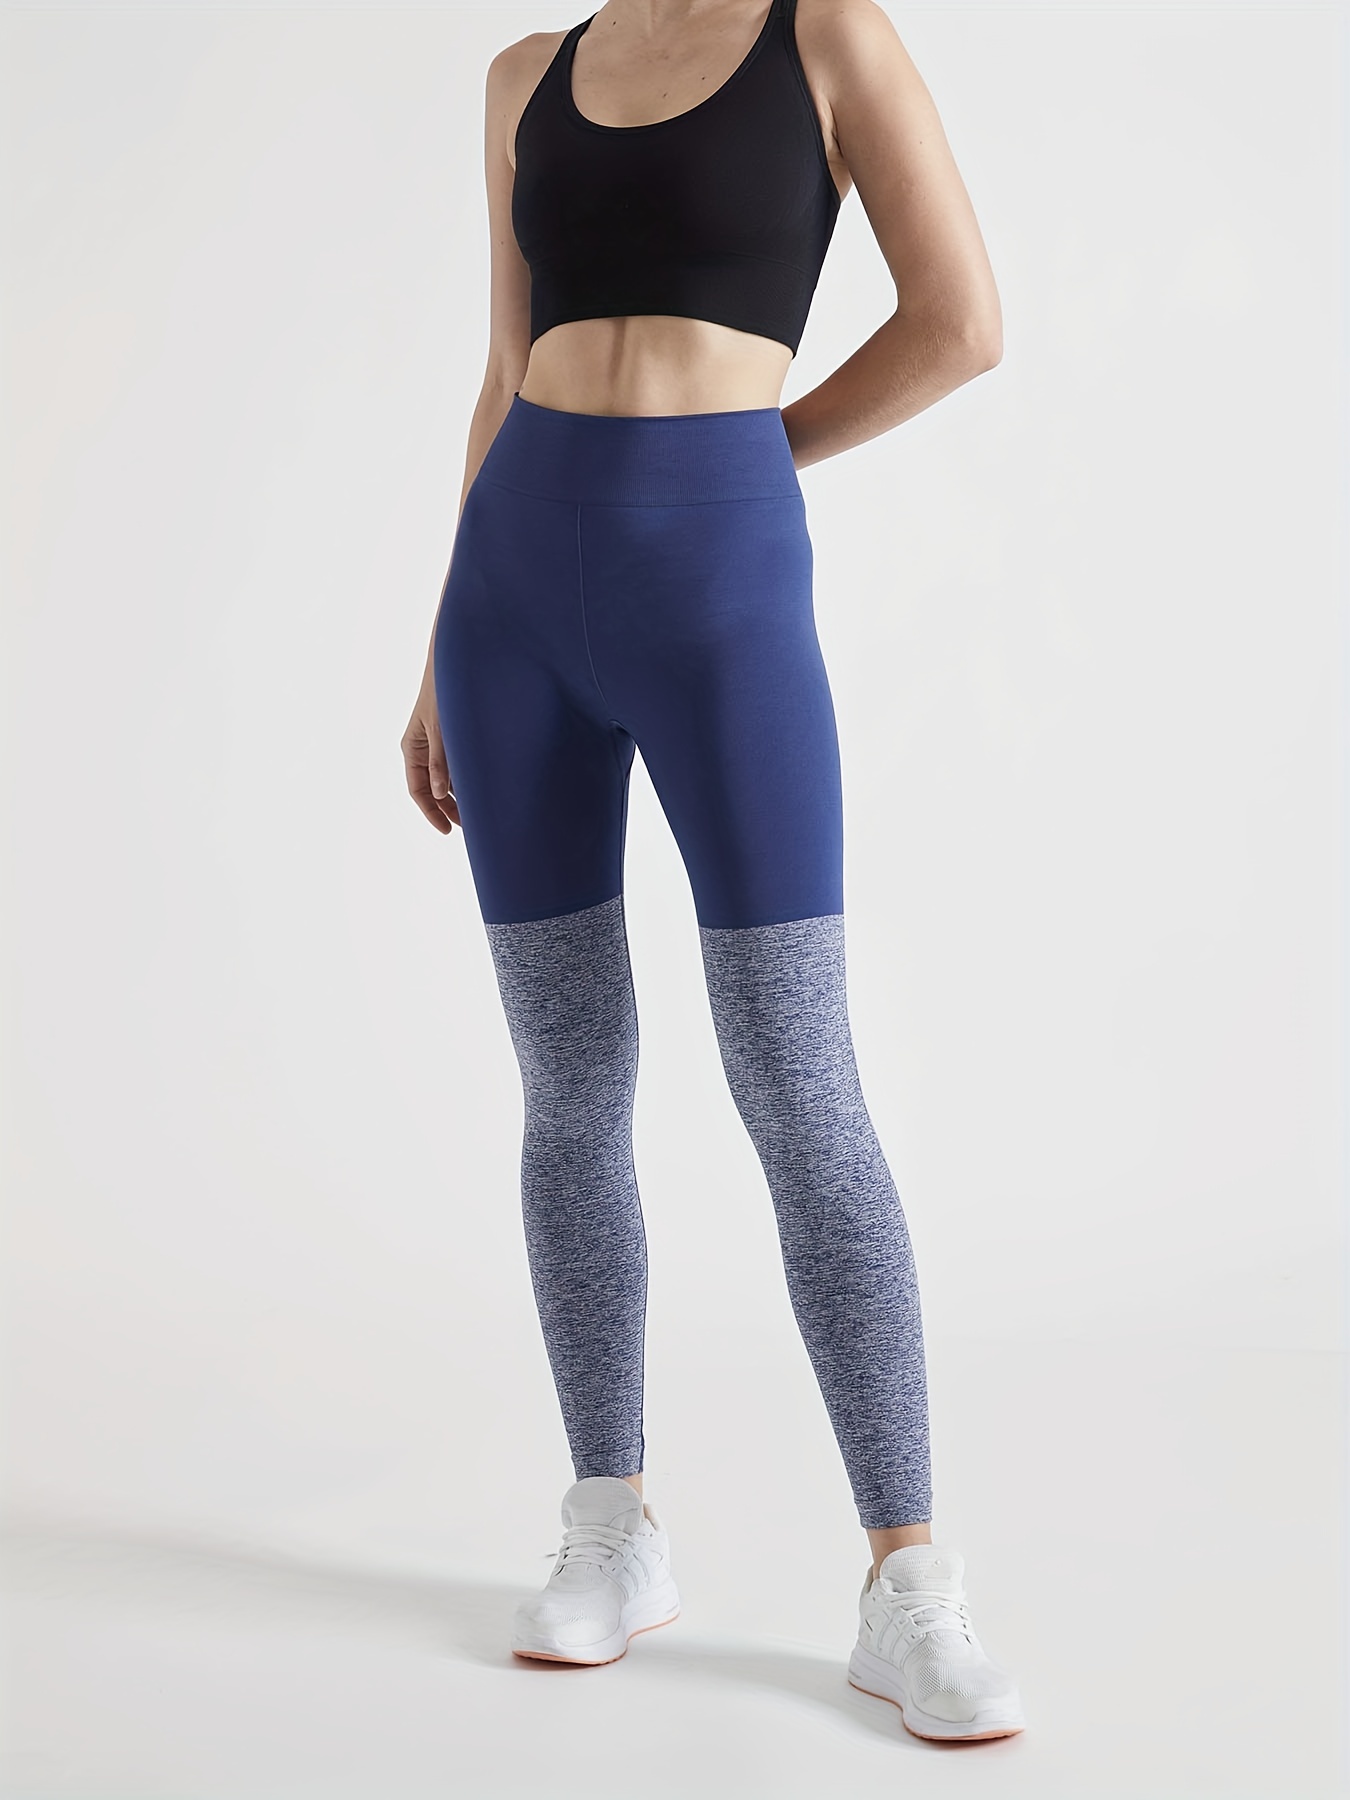 Color Block Skinny Leggings Casual Butt Lifting Workout - Temu